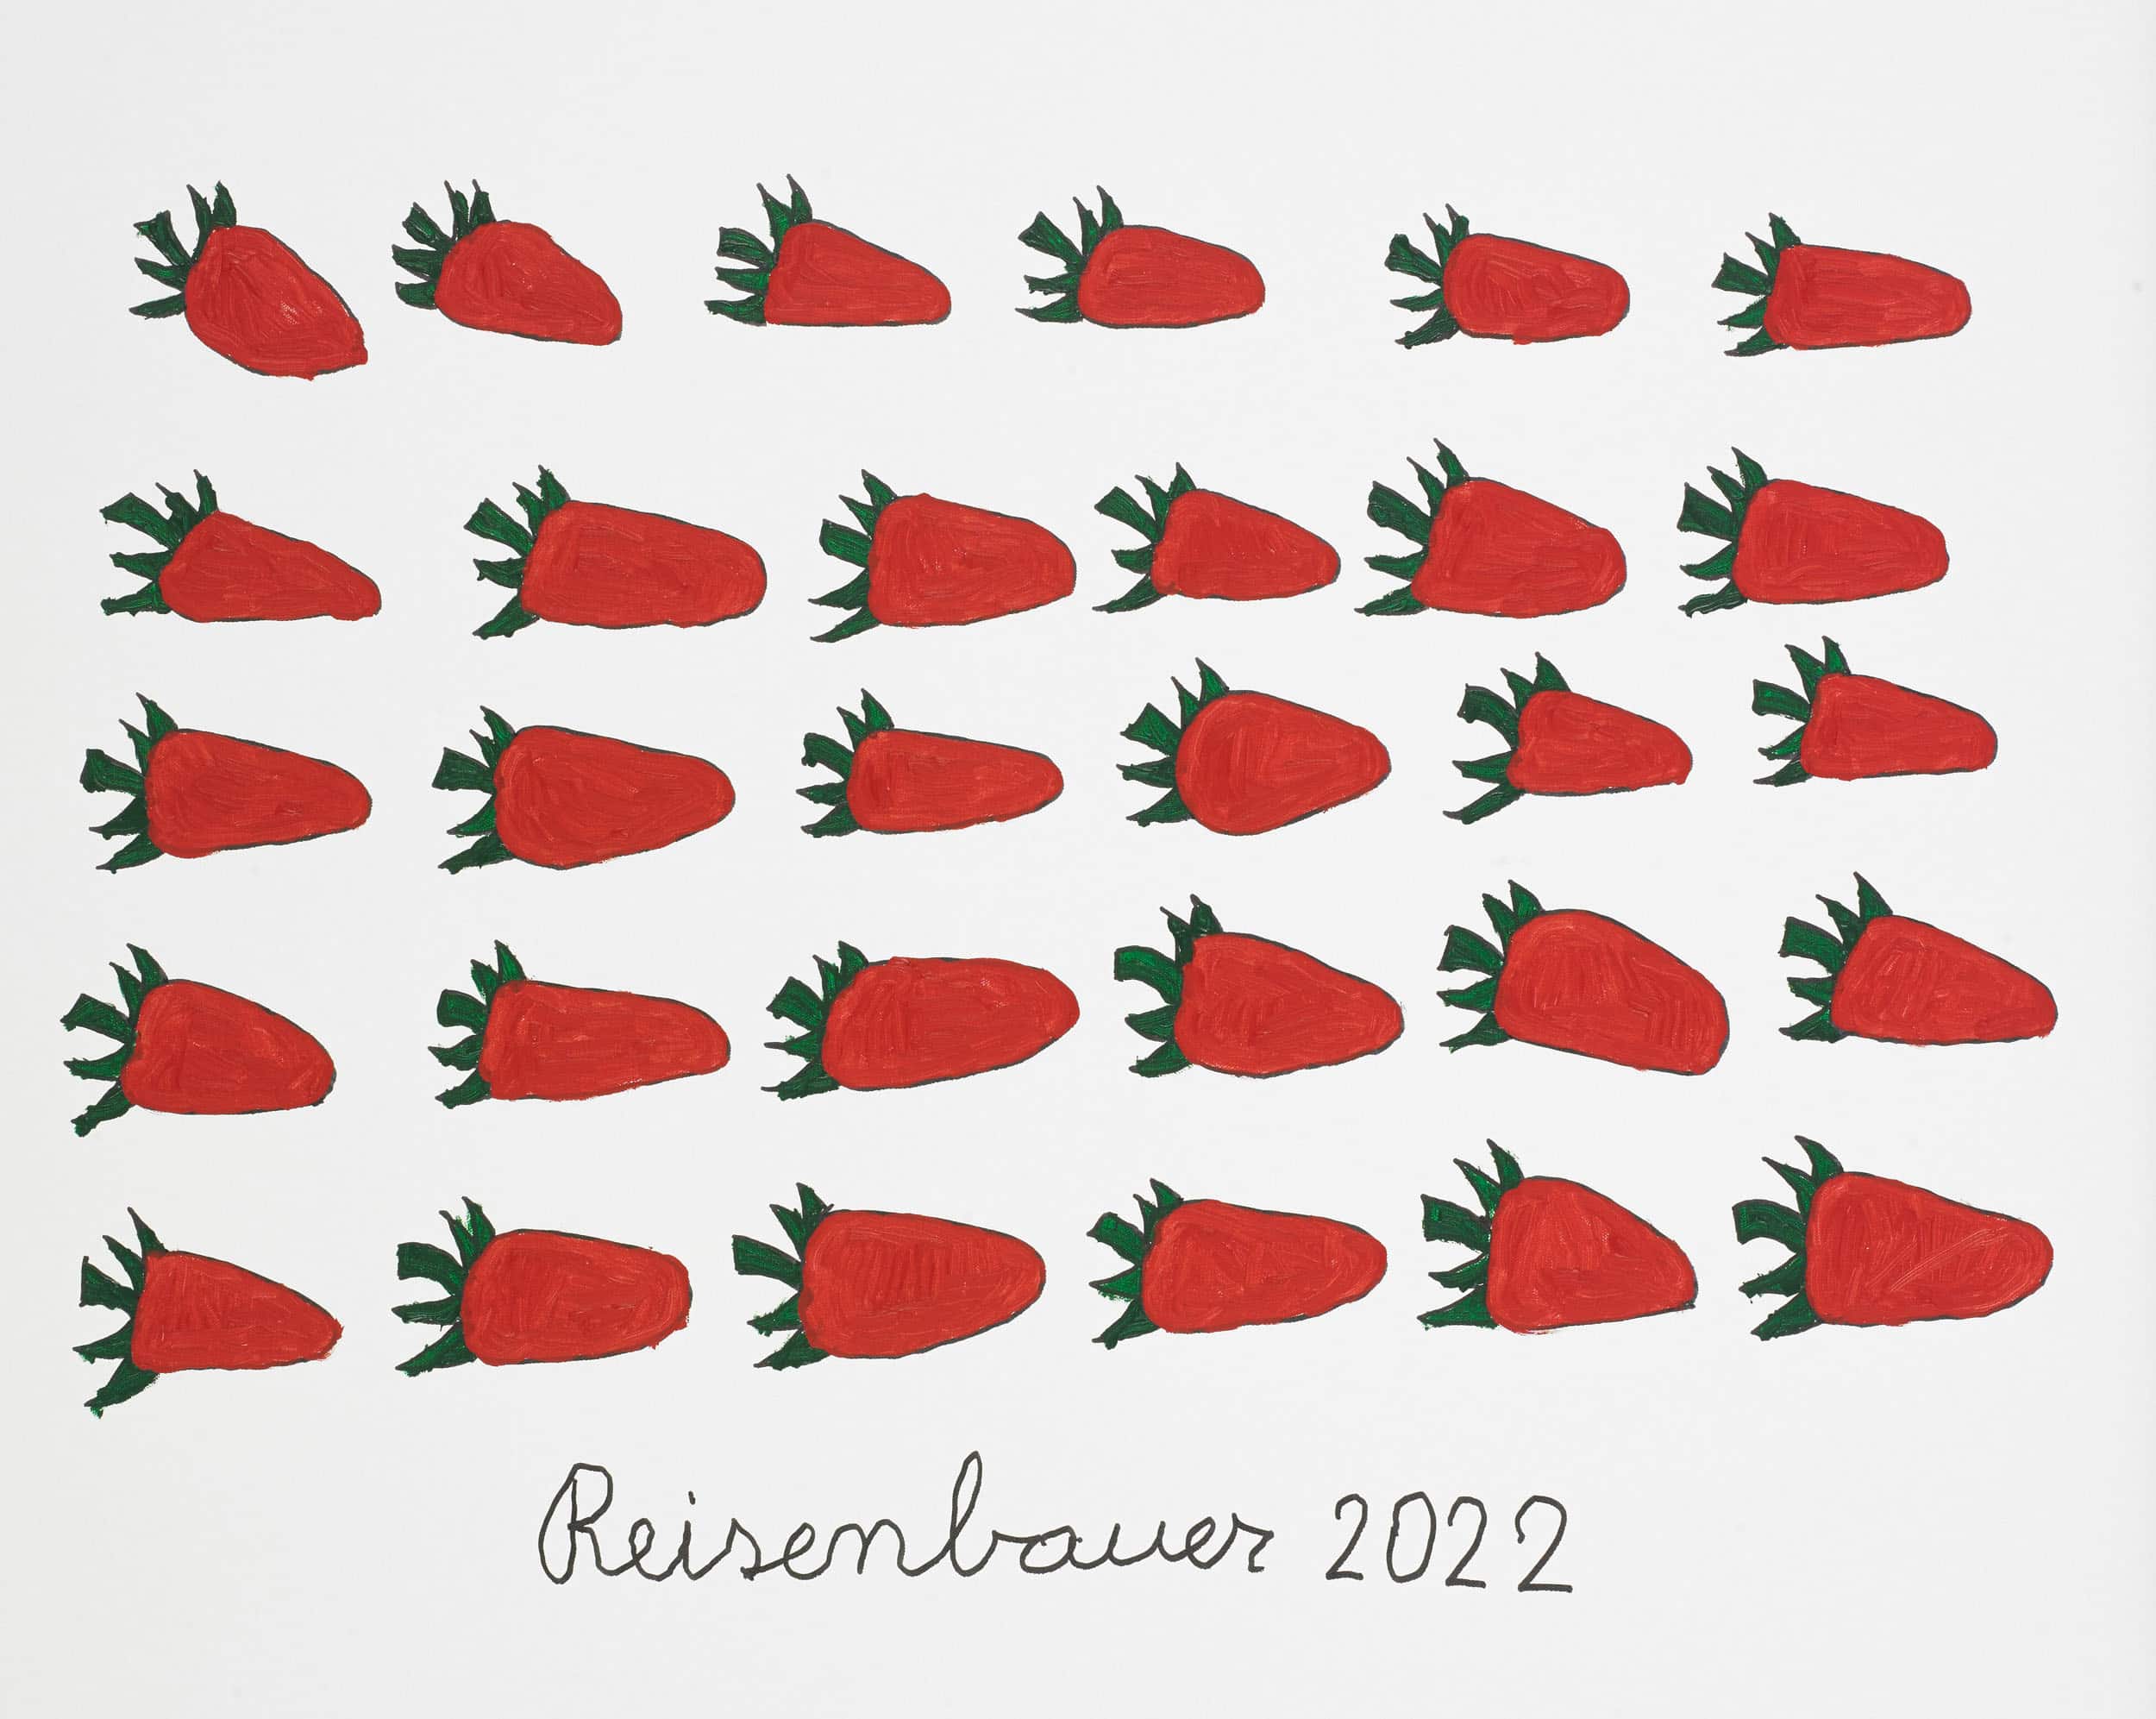 reisenbauer heinrich - Erdbeeren / Strawberries